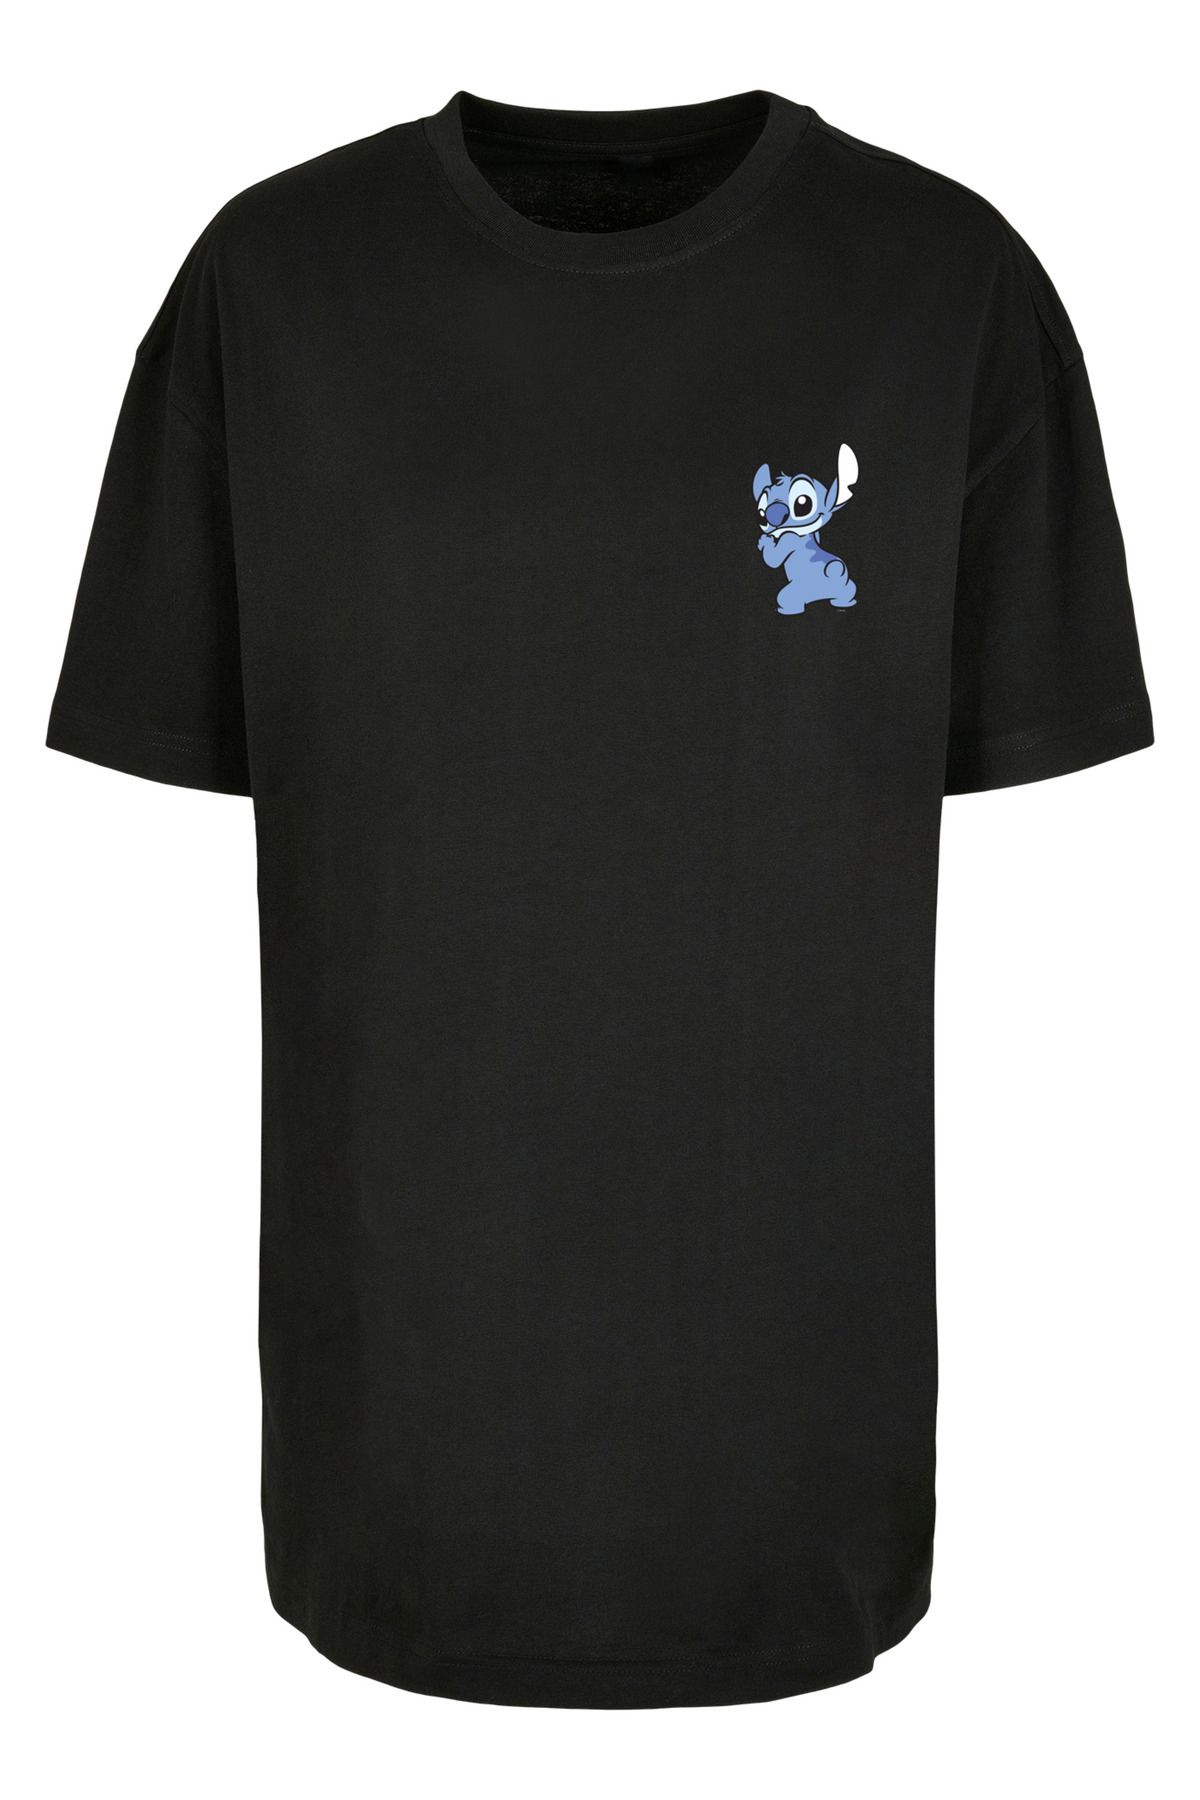 Damen und Stitch-Print Stitch der Lilo Rückseite - Damen F4NT4STIC der Trendyol übergroßem Brust auf Boyfriend-T-Shirt mit Disney für